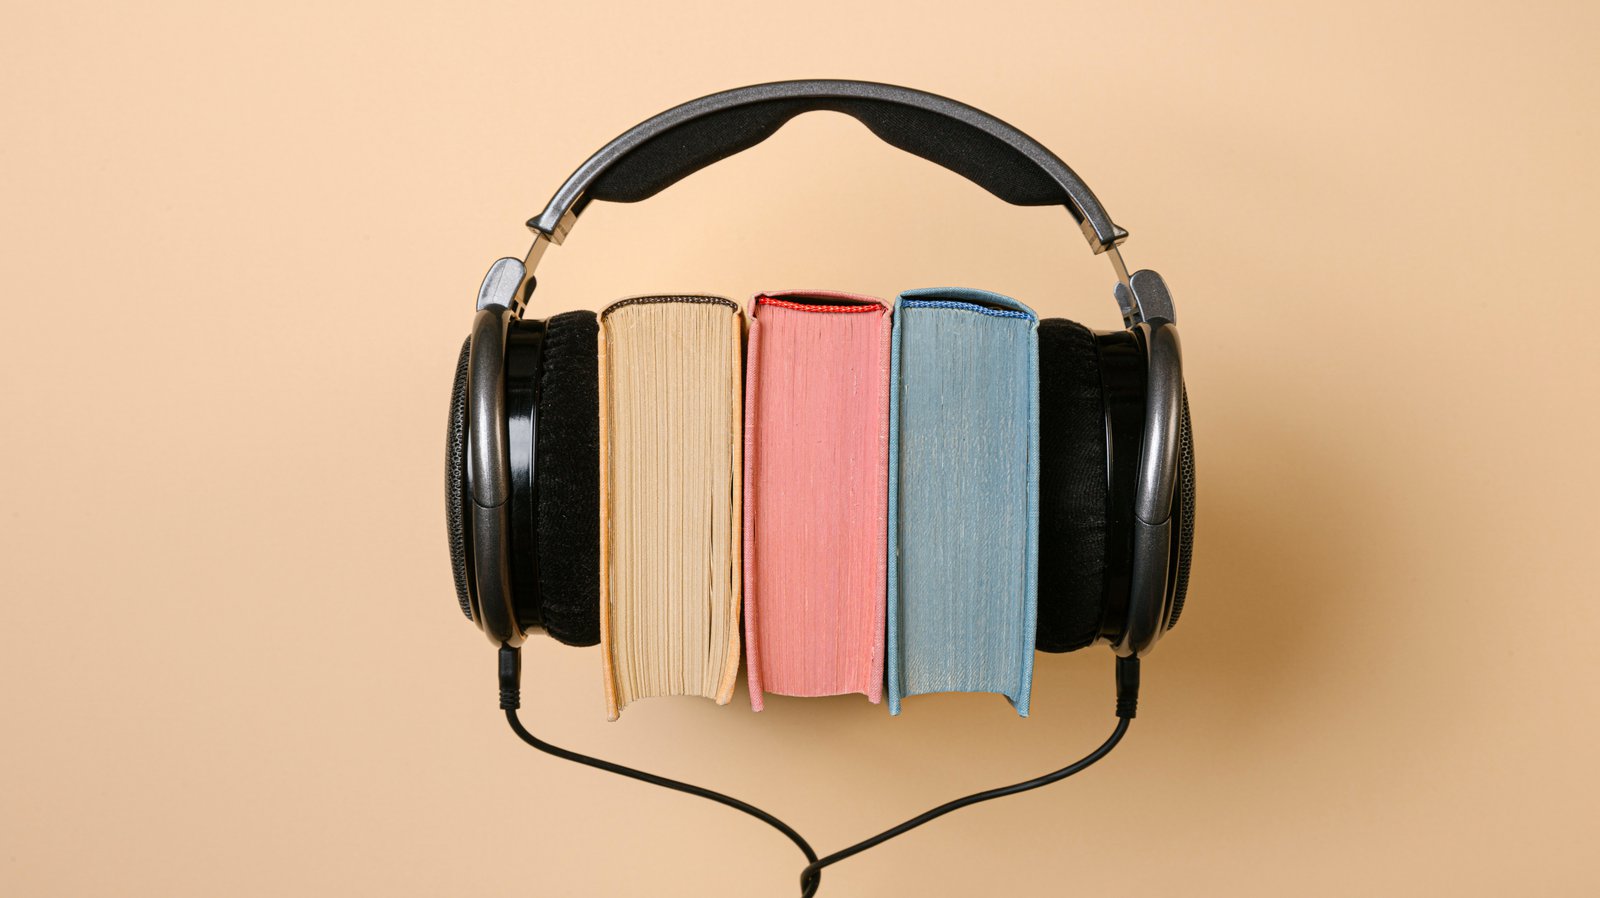 Kopfhörer und Bücher